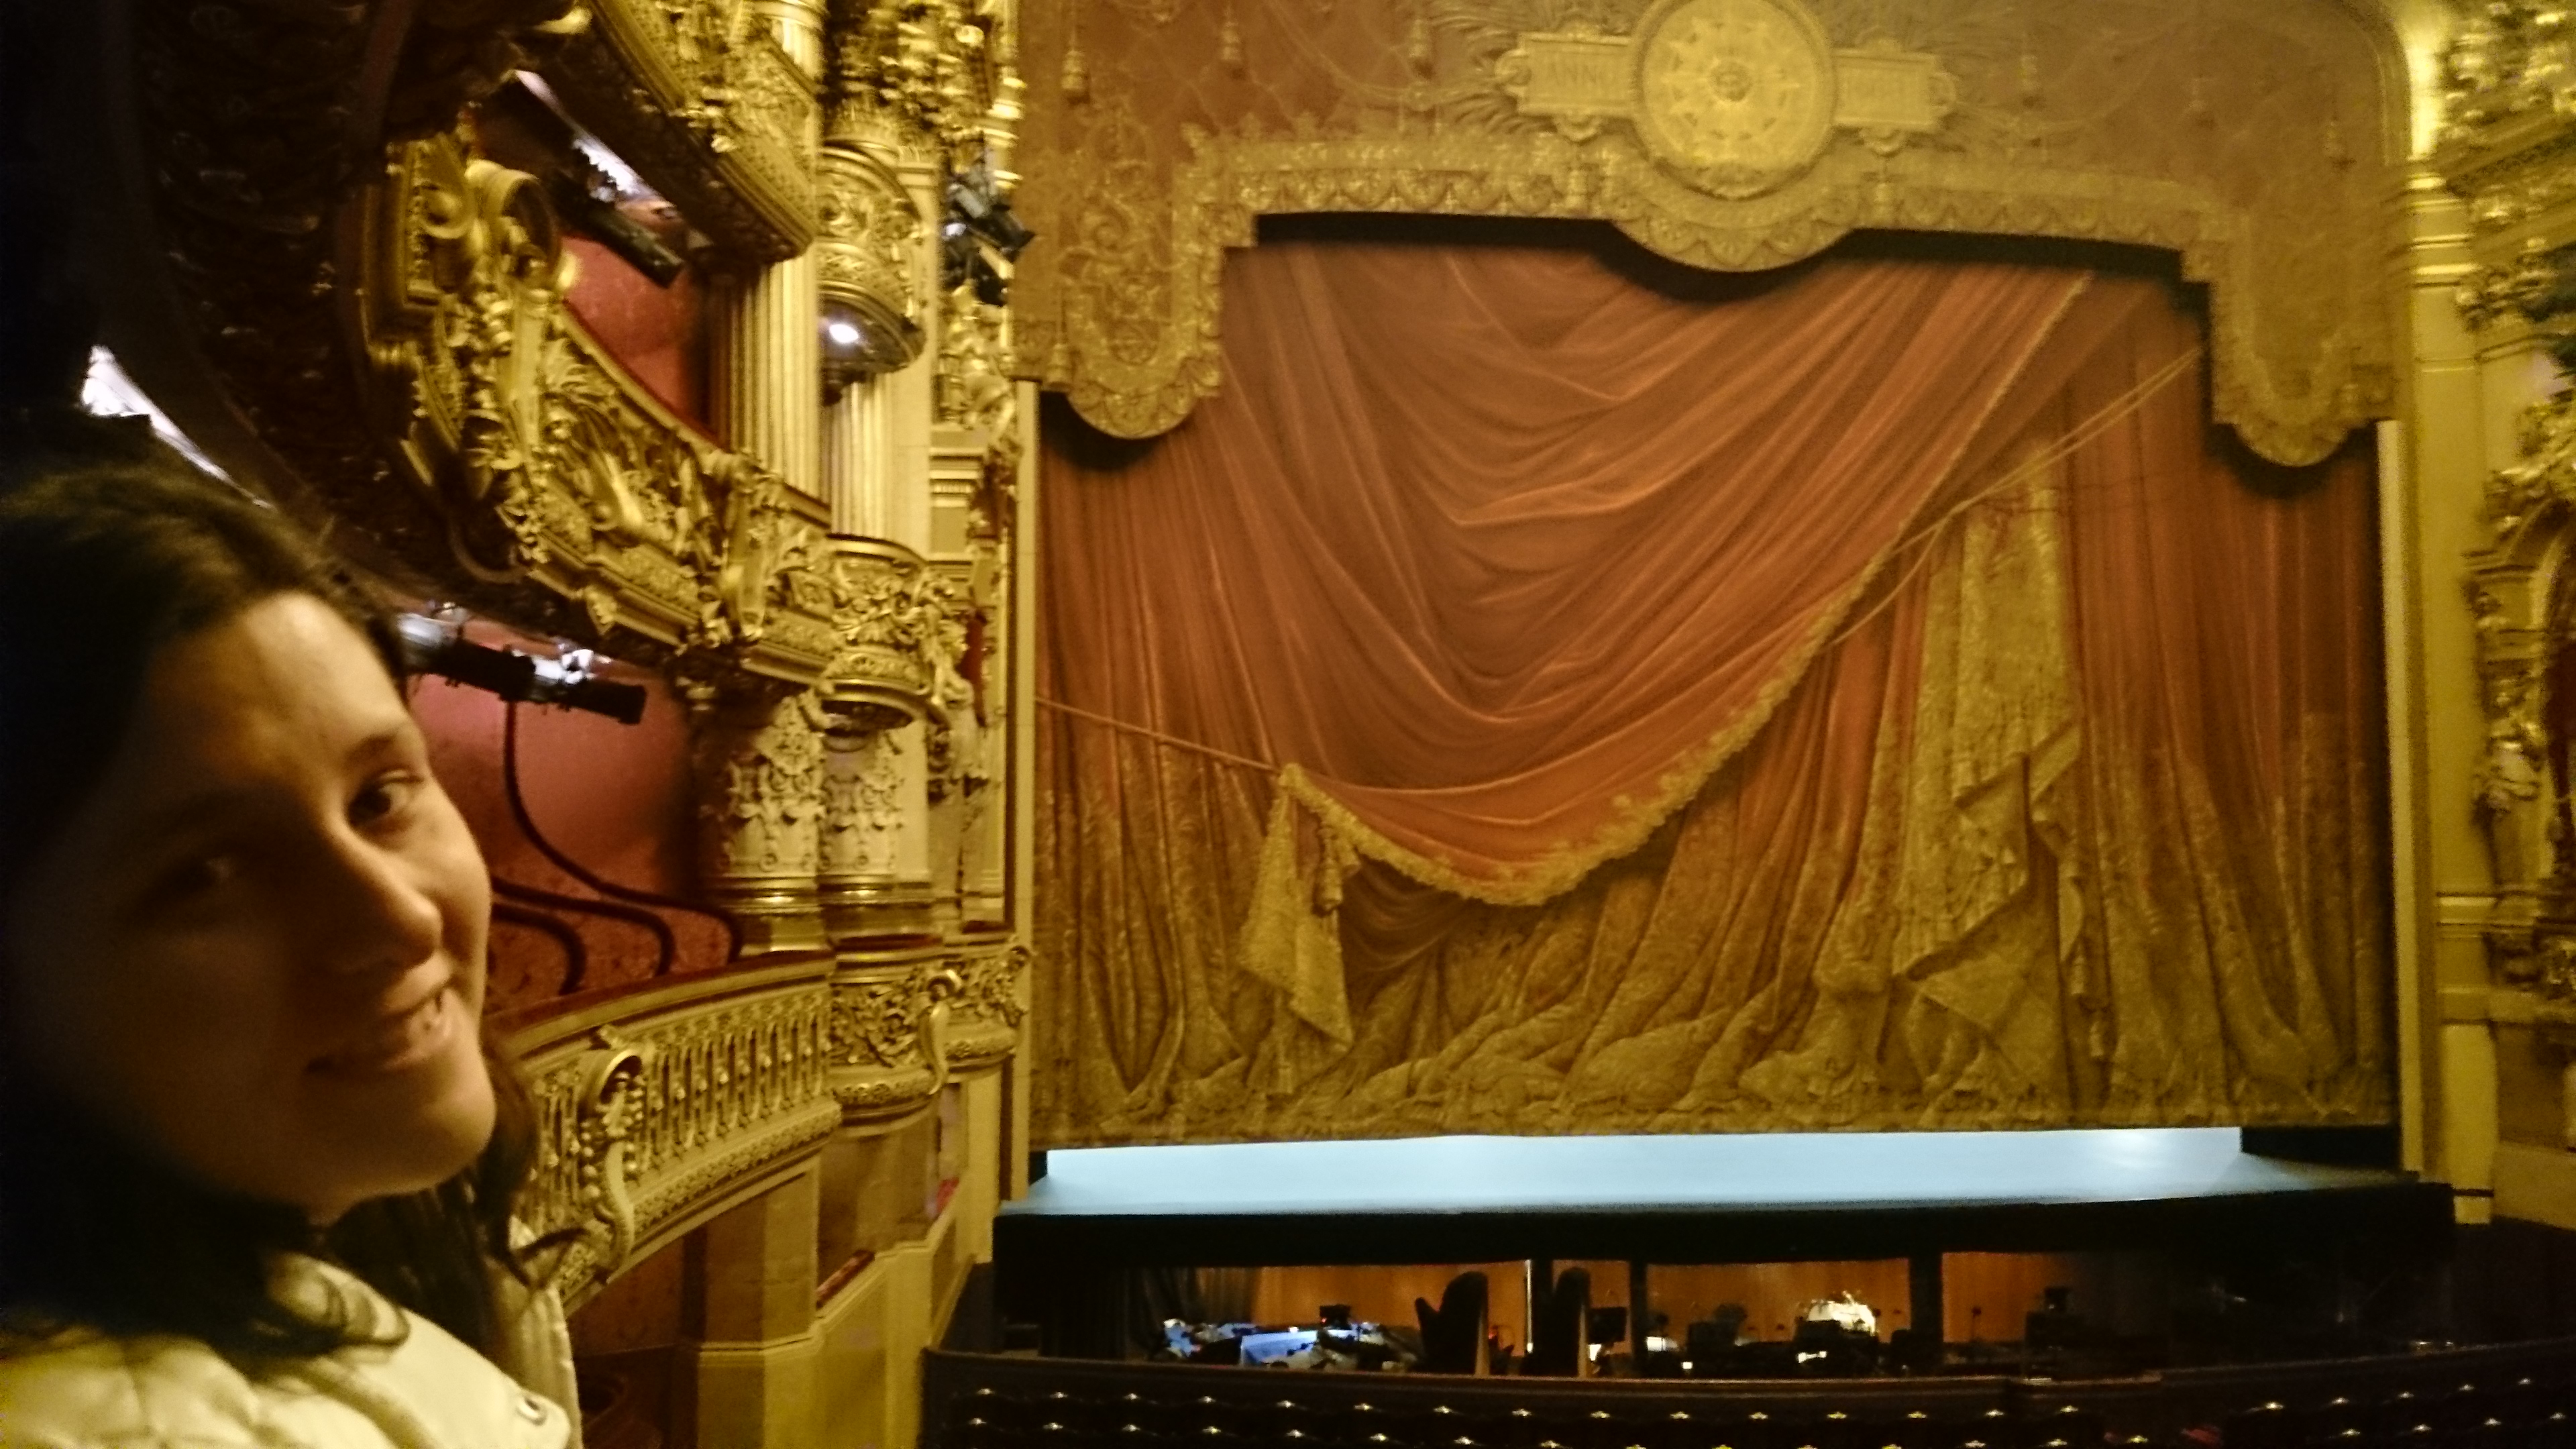 dsc 1040 - Una visita a la Opera de Paris (Palais Garnier)